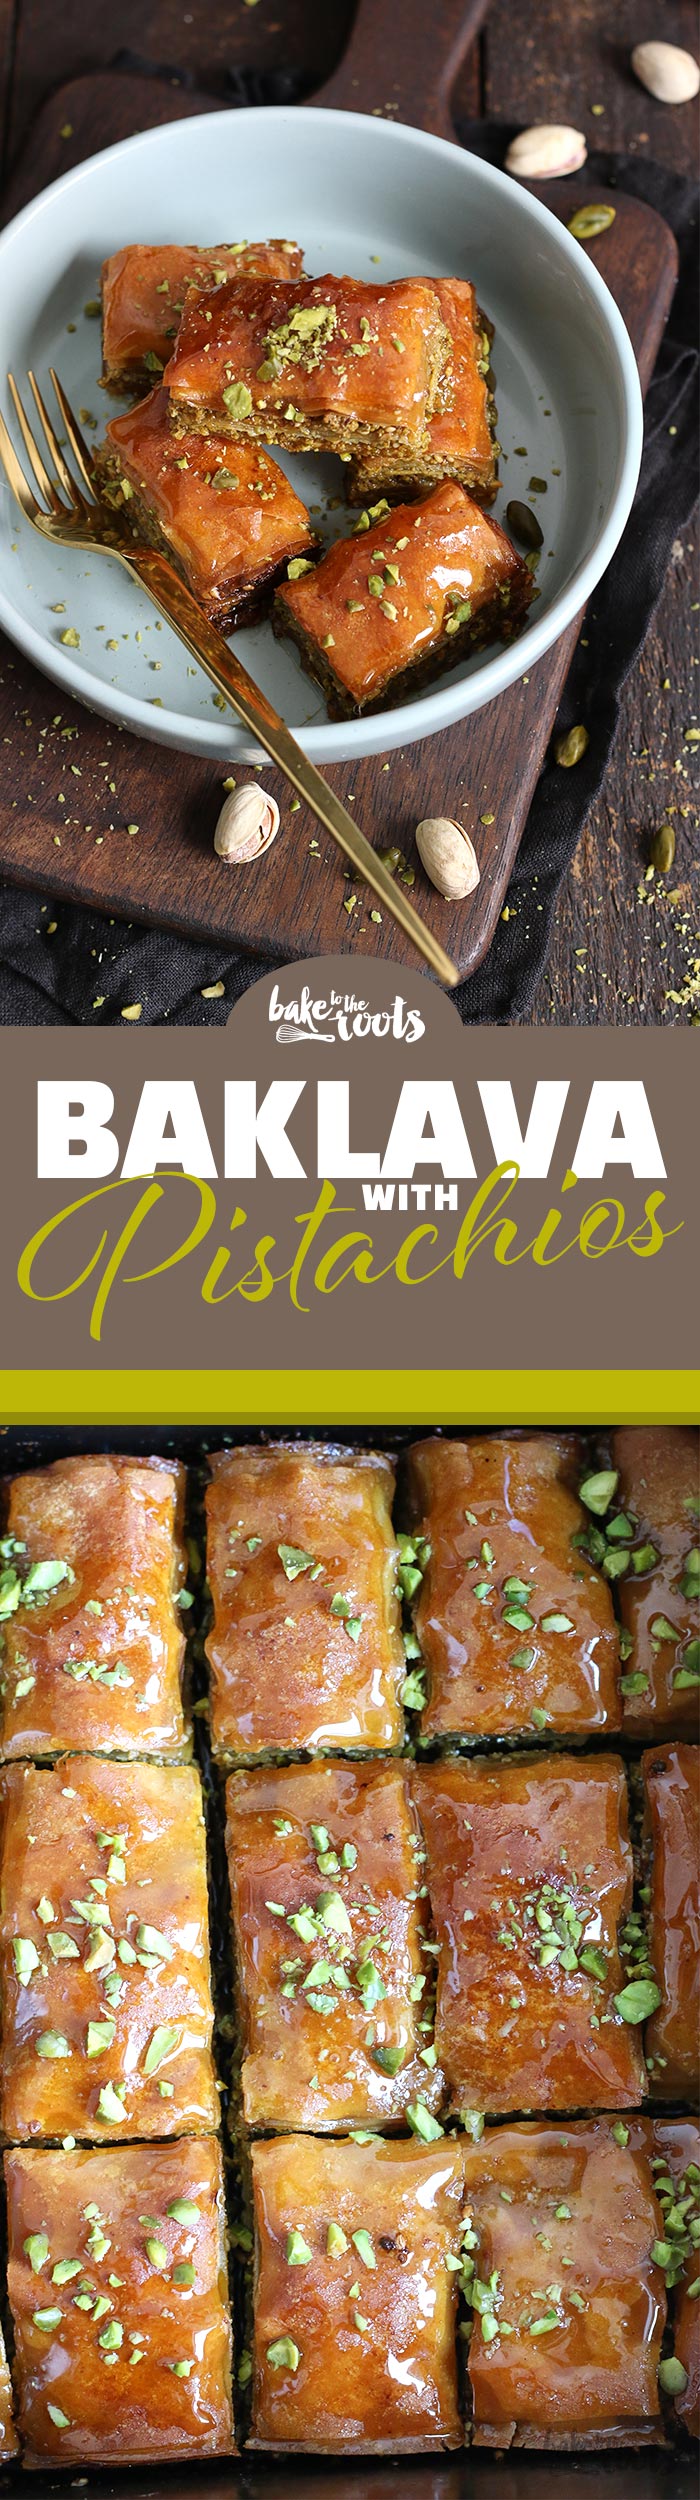 Baklava mit Pistazien | Bake to the roots